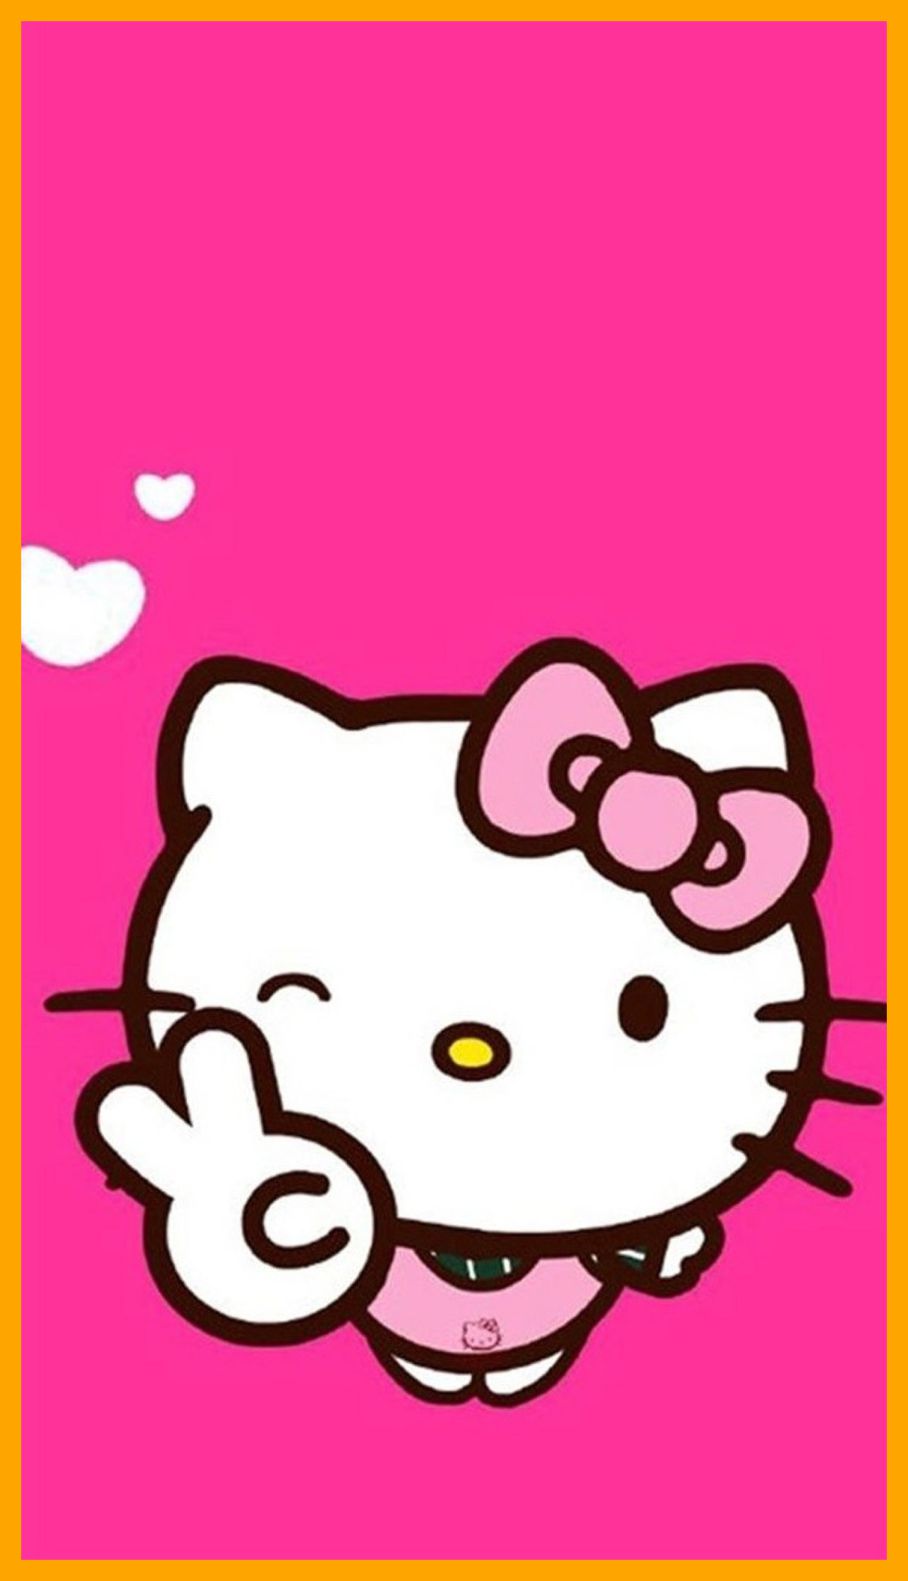 Thưởng thức những hình ảnh đẹp ngọt ngào của Hello Kitty màu hồng, bạn sẽ không thể rời mắt khỏi chú mèo xinh đáng yêu này. Với các thiết kế tinh tế và sắc màu sinh động, chắc chắn sẽ khiến bạn yêu thích hơn bao giờ hết. Nhanh tay bấm vào để trải nghiệm nhé.